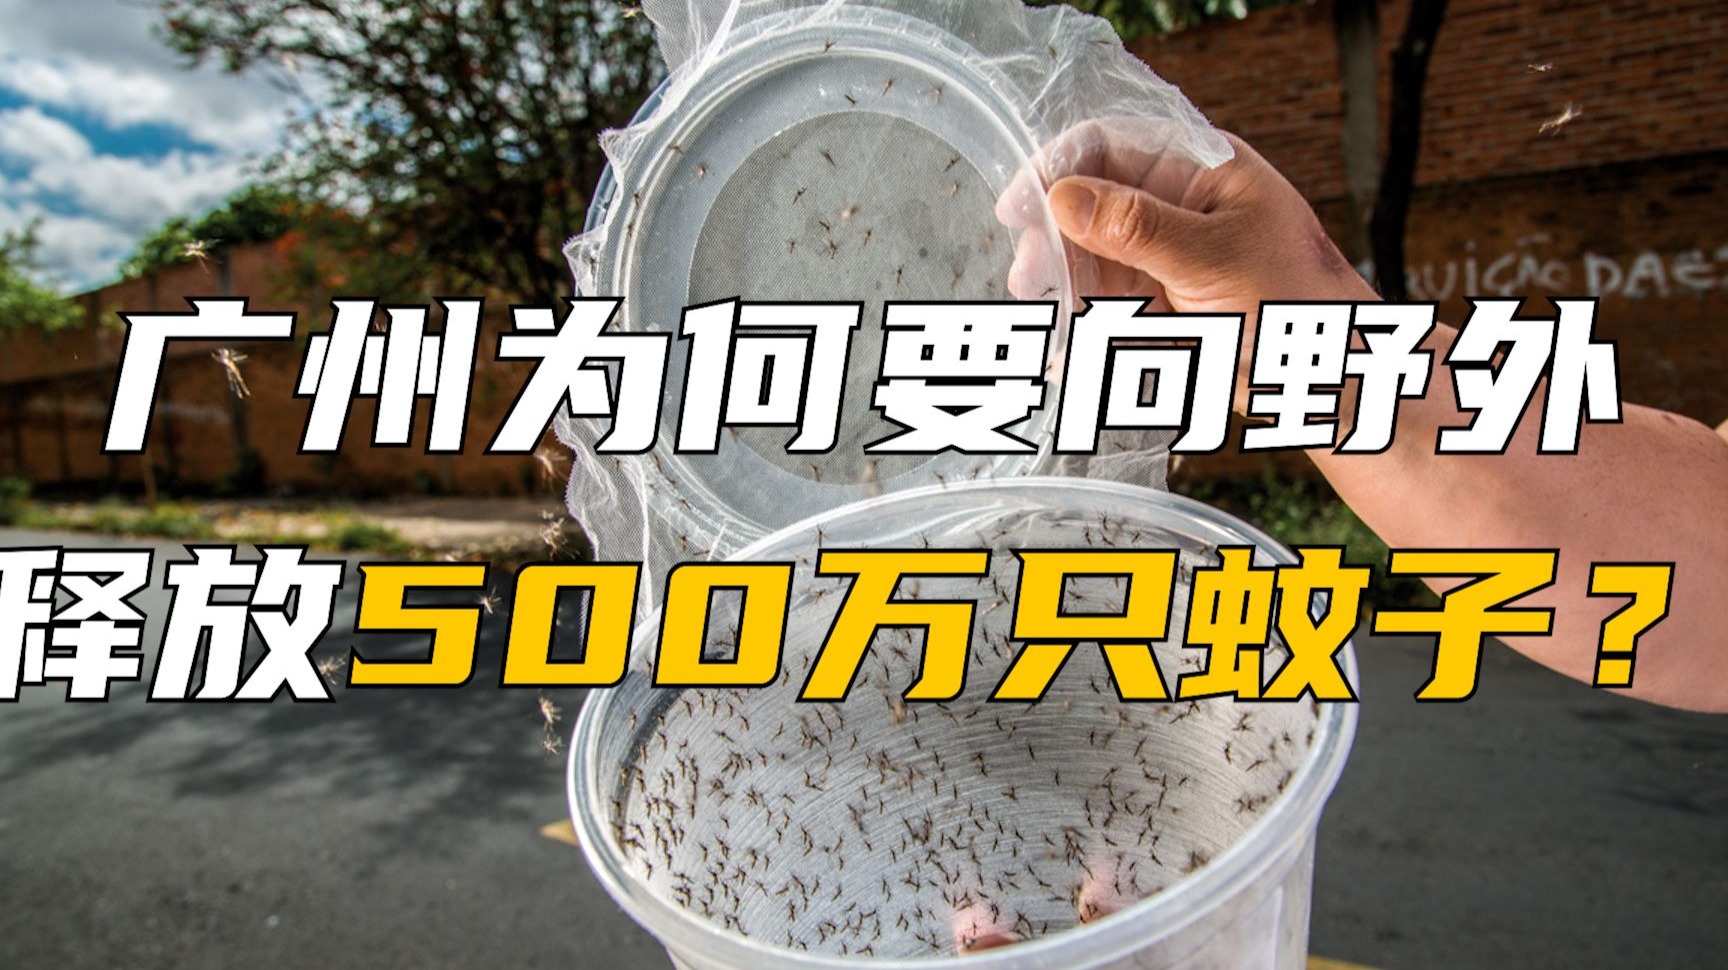 广州为何要向野外释放500万只蚊子？